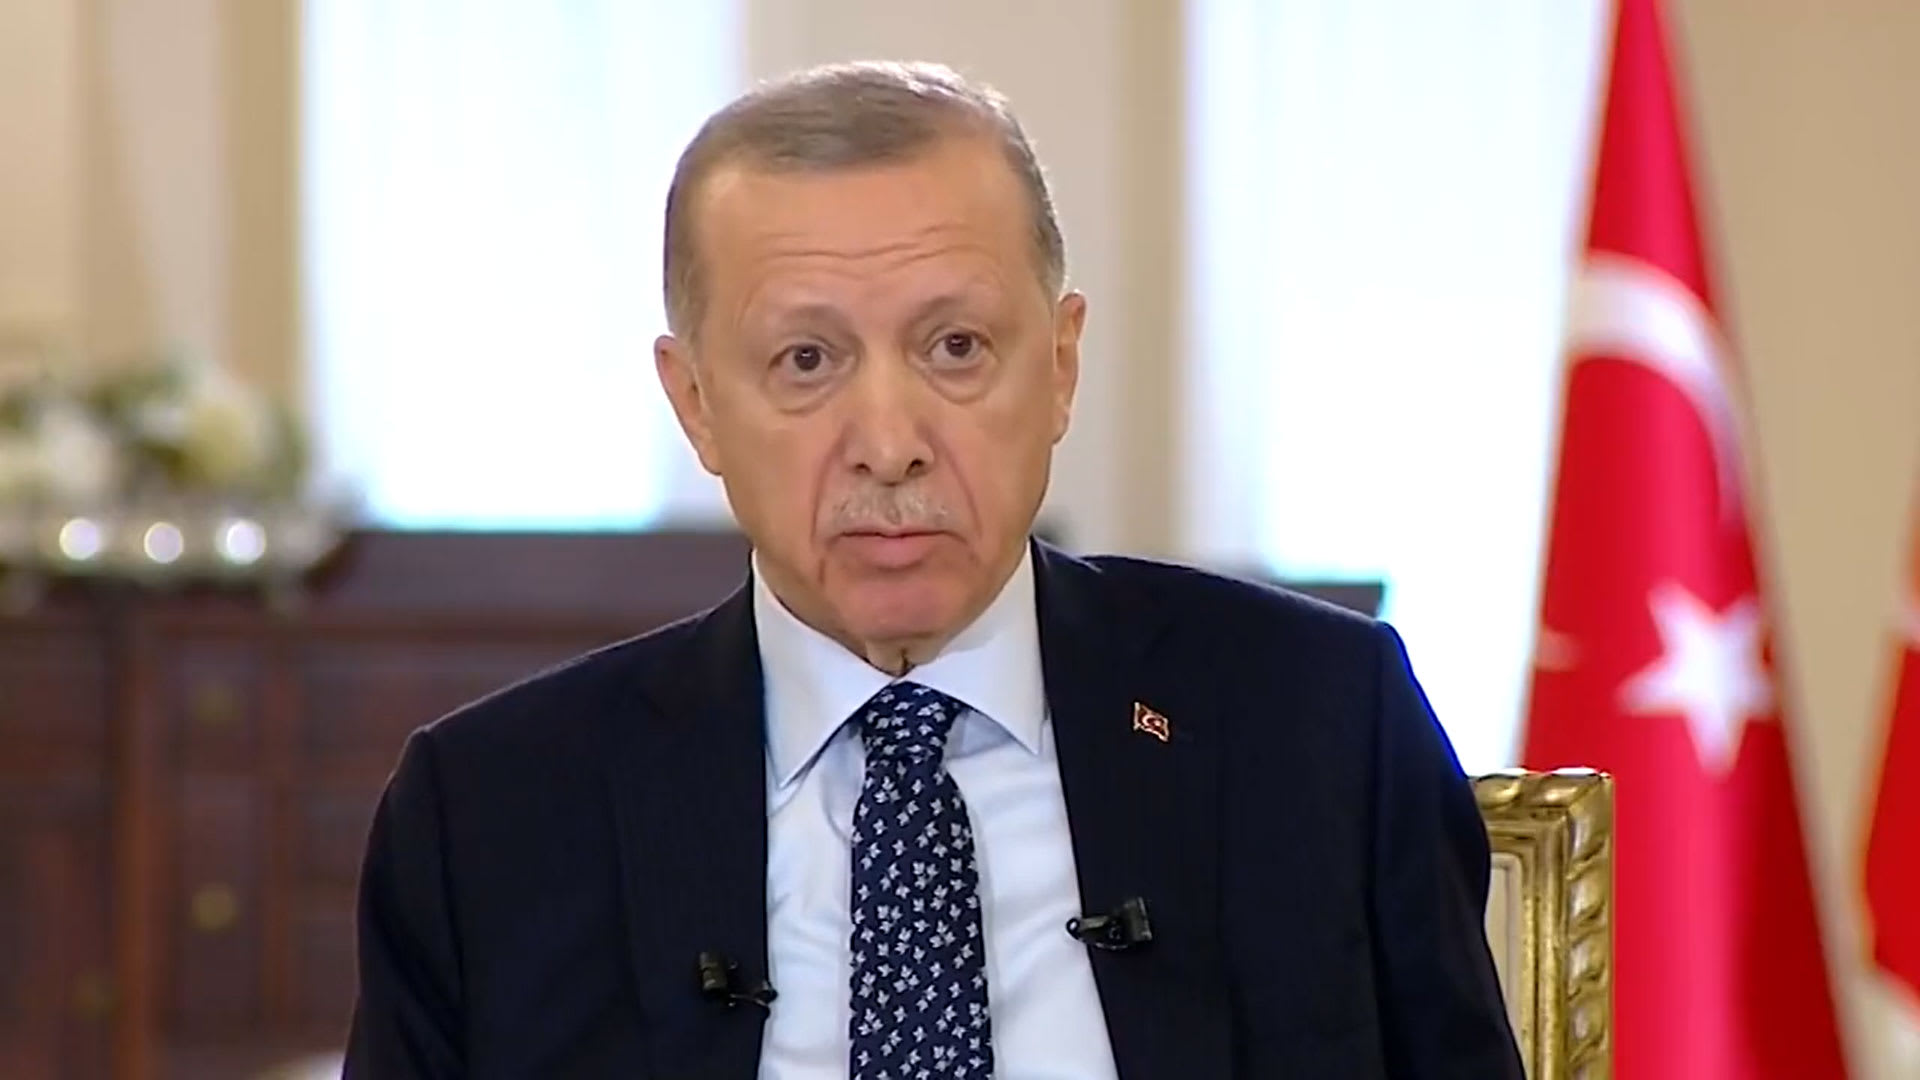 تداول فيديو تعرض أردوغان لوعكة صحية خلال مقابلة.. وهذا ما قاله بعدها